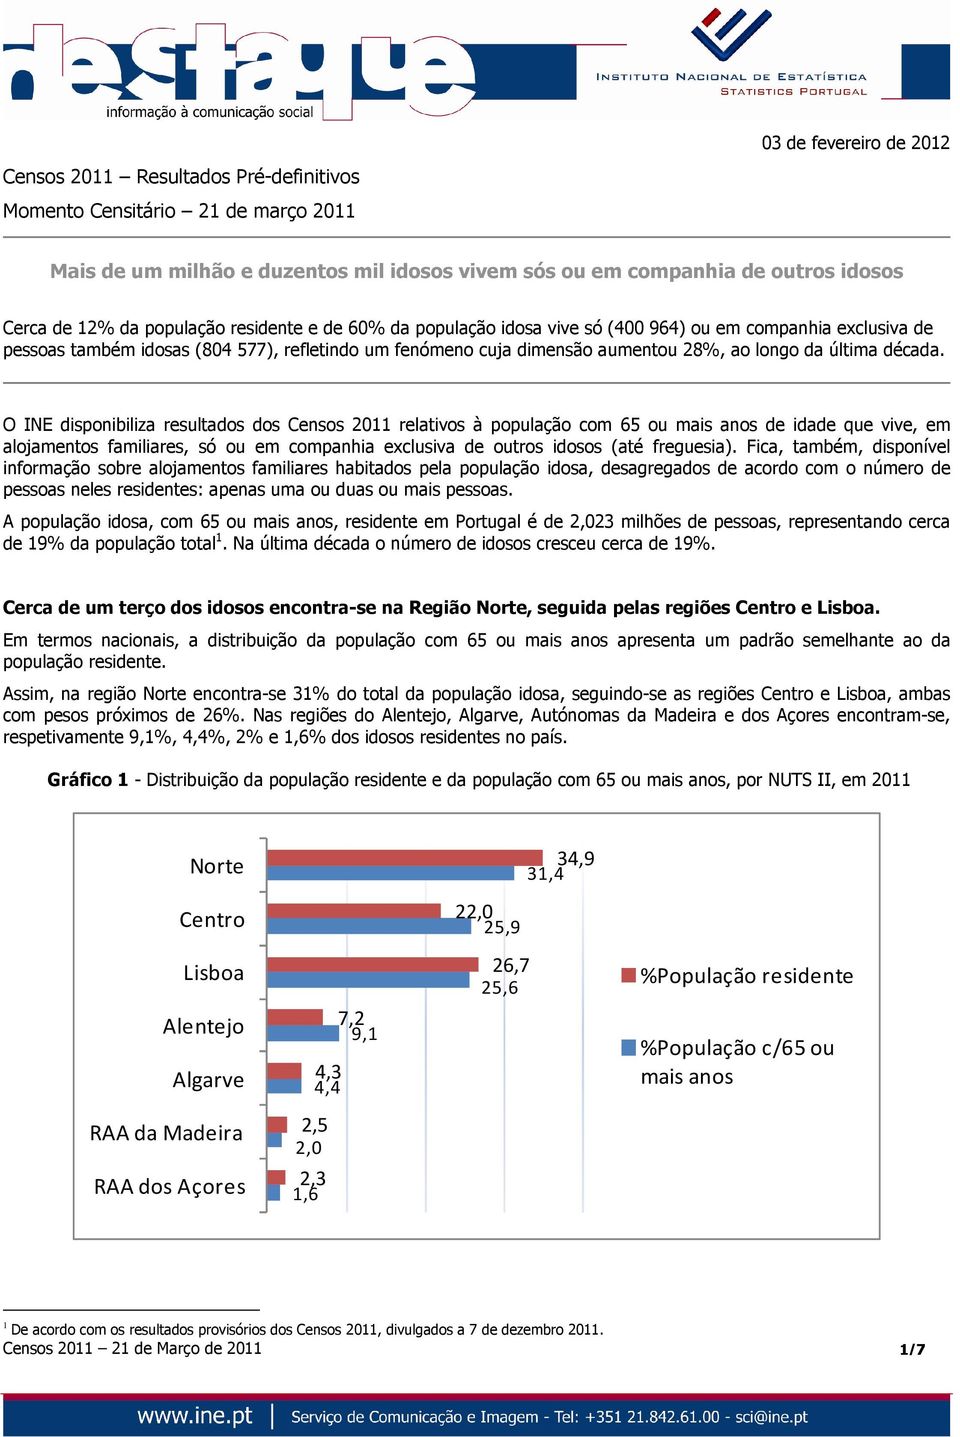 década. O INE disponibiliza resultados dos Censos 2011 relativos à população com 65 ou de idade que vive, em alojamentos, só ou em companhia exclusiva de outros idosos (até freguesia).